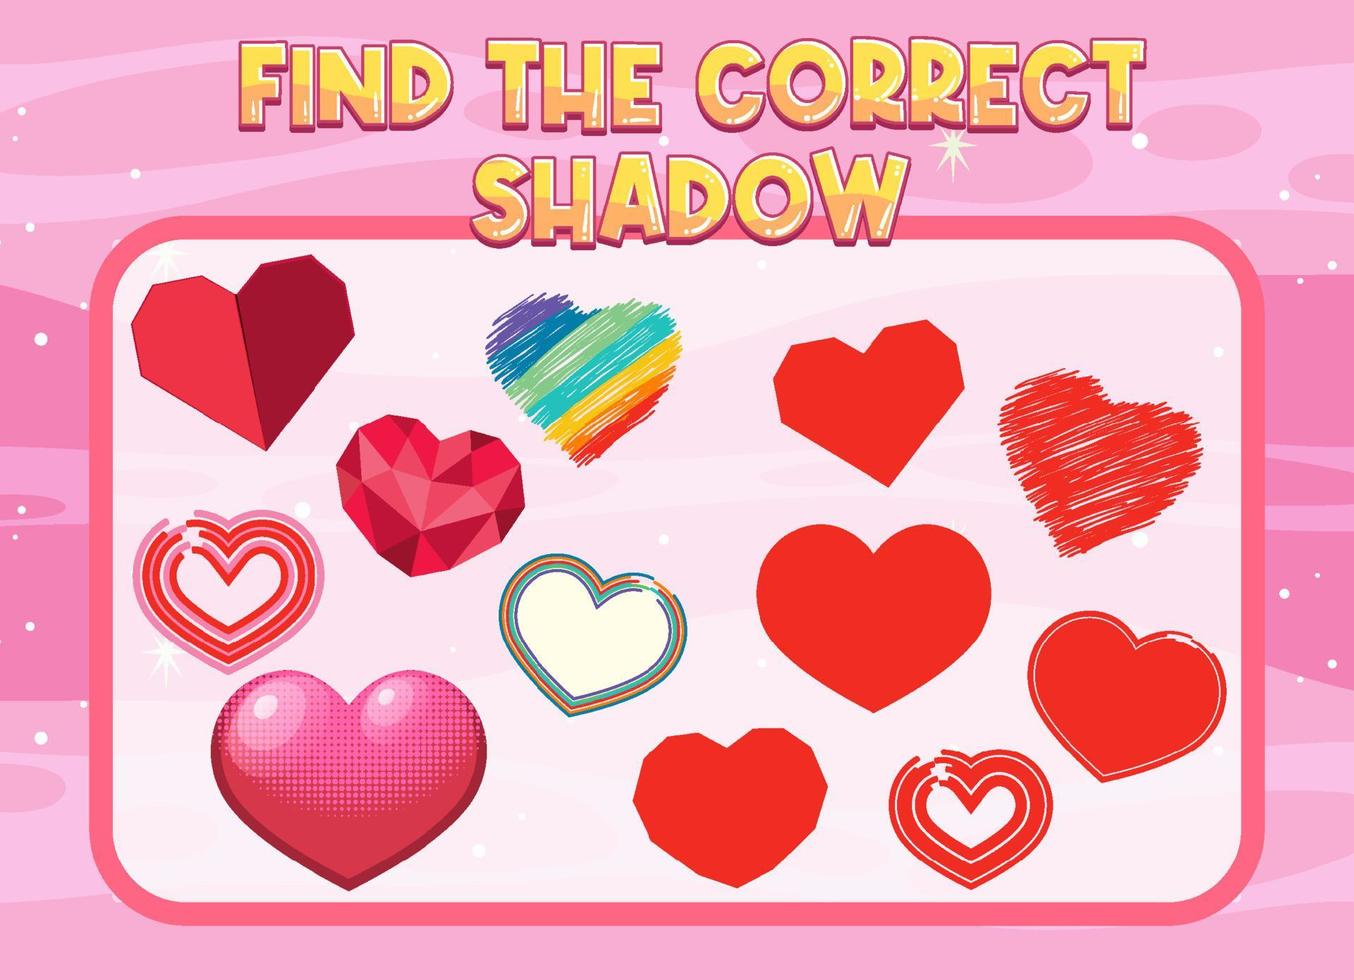 trouver la bonne feuille de calcul d'ombre et de correspondance d'ombre pour l'élève de la maternelle vecteur